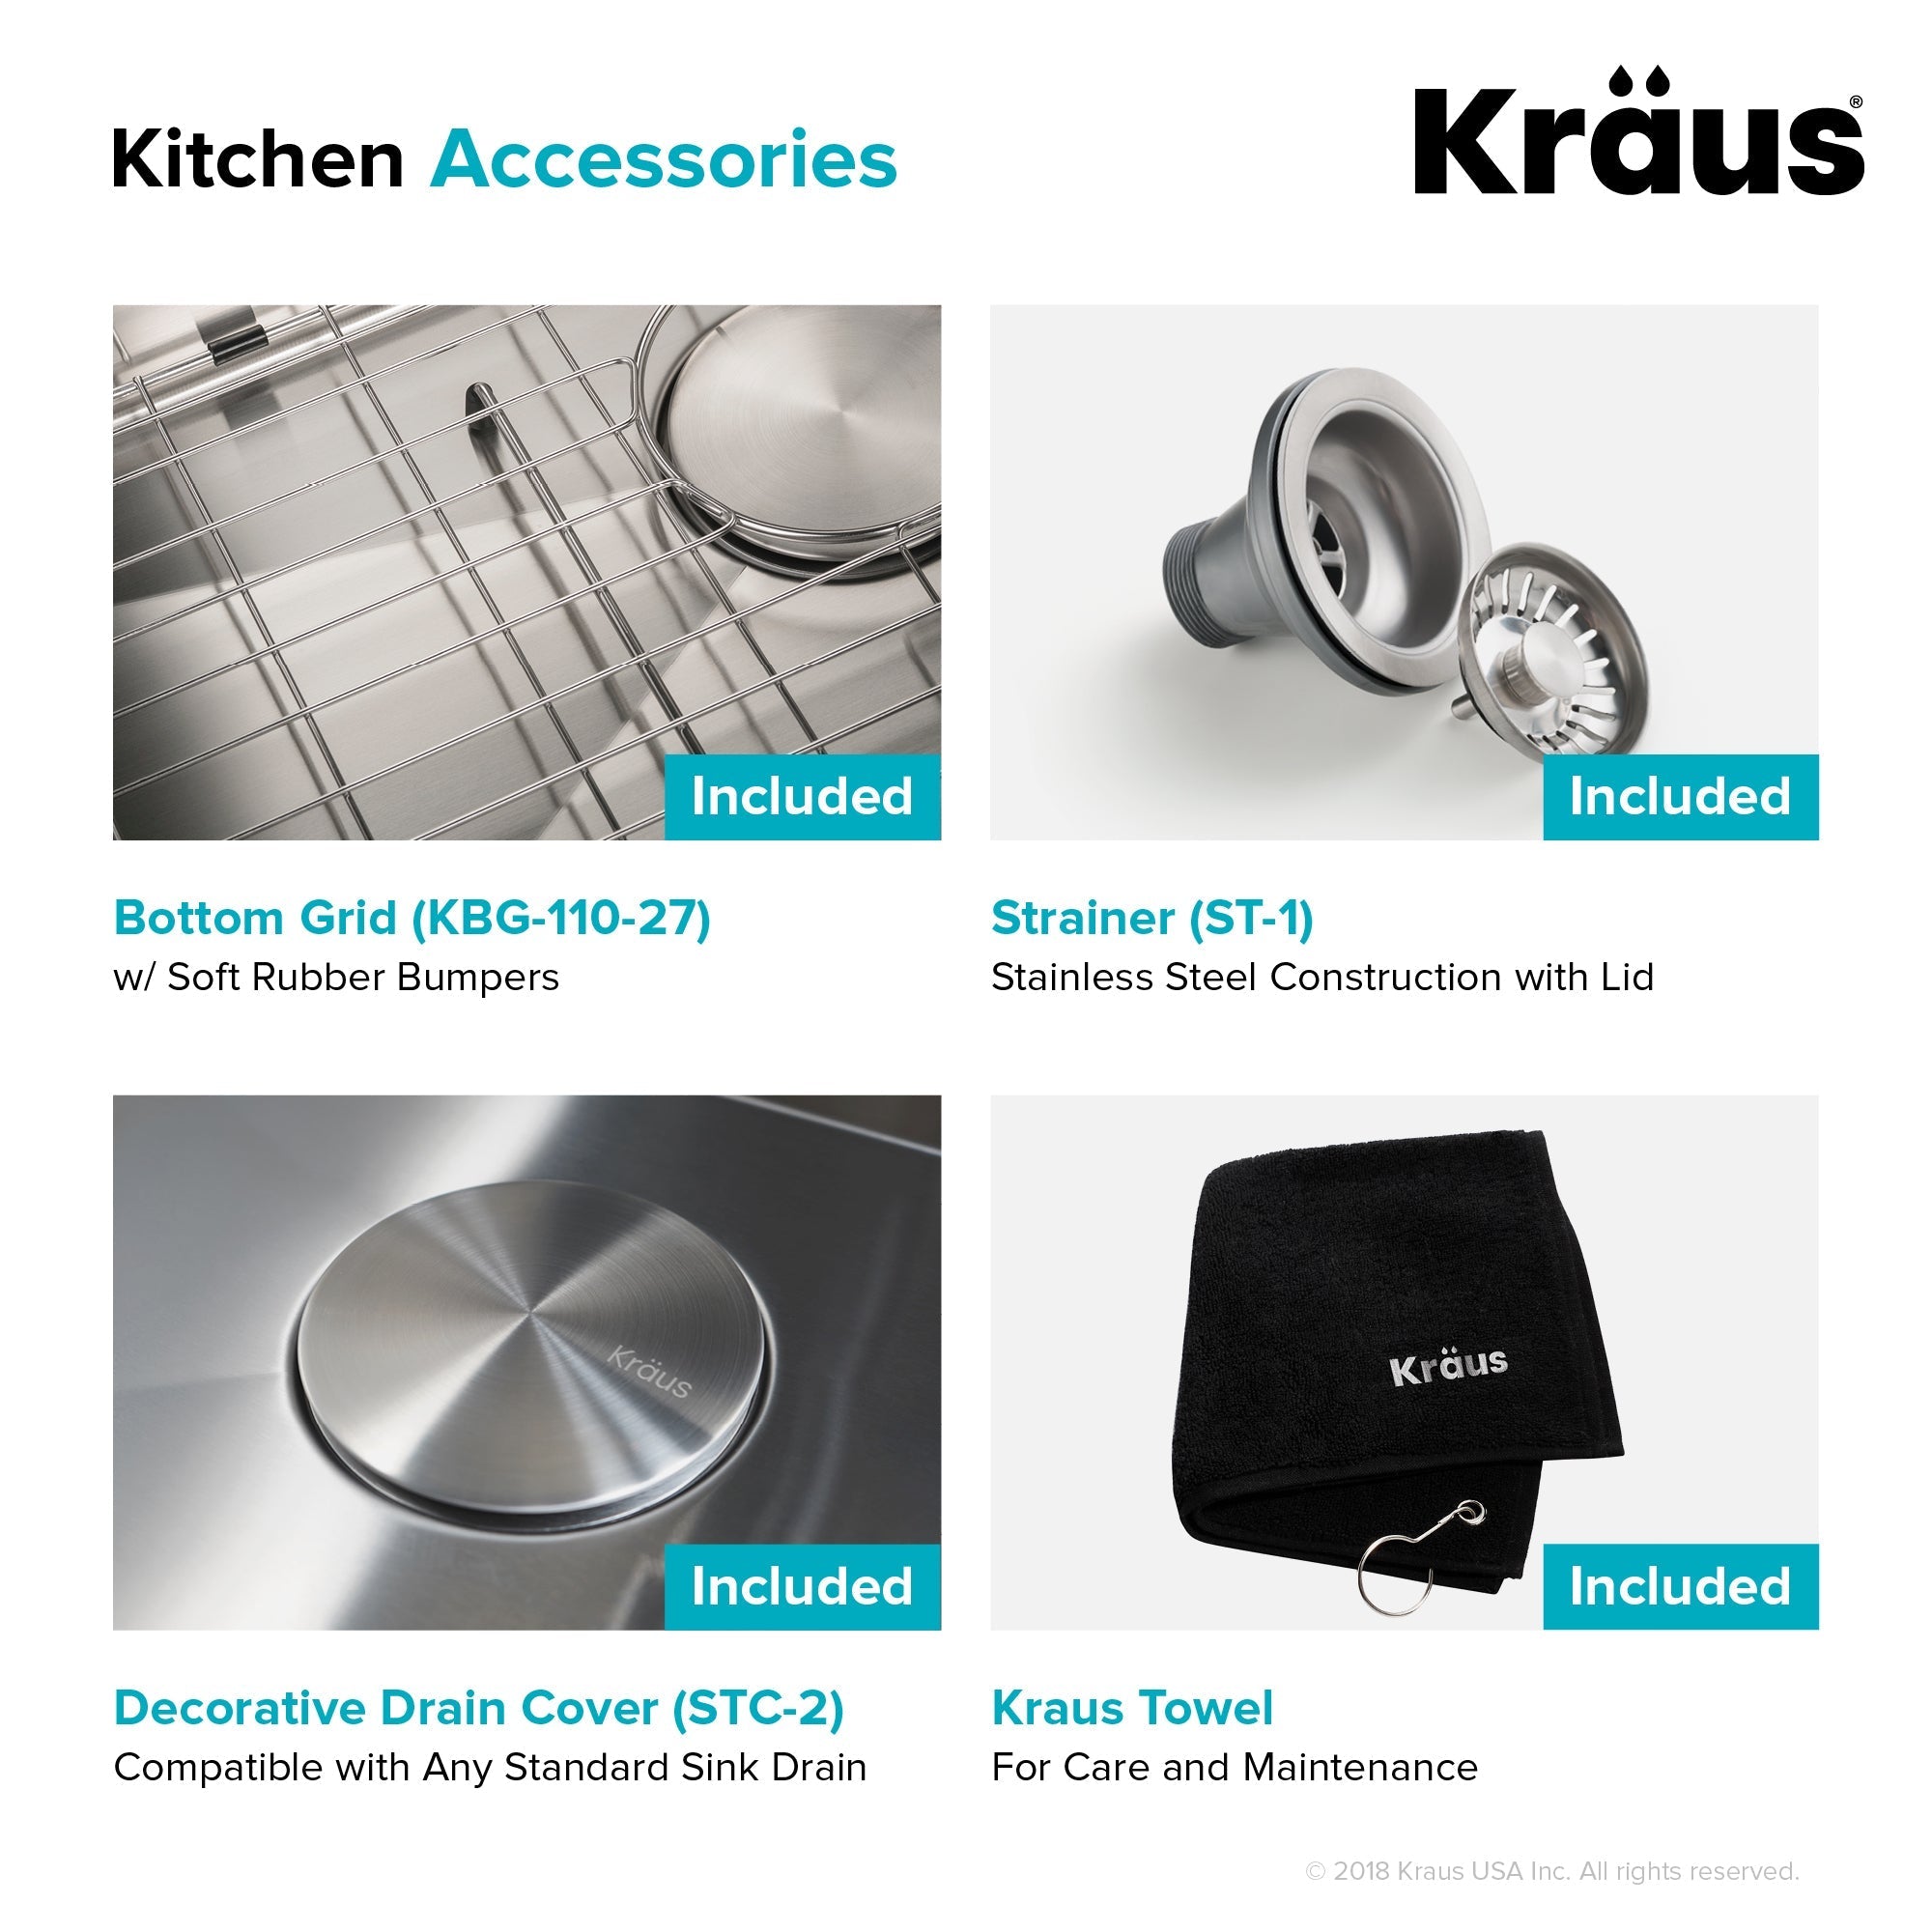 KRAUS 27" 16 Gauge Undermount Single Bowl Stainless Steel Kitchen Sink with Off Center Drain-Kitchen Sinks-DirectSinks